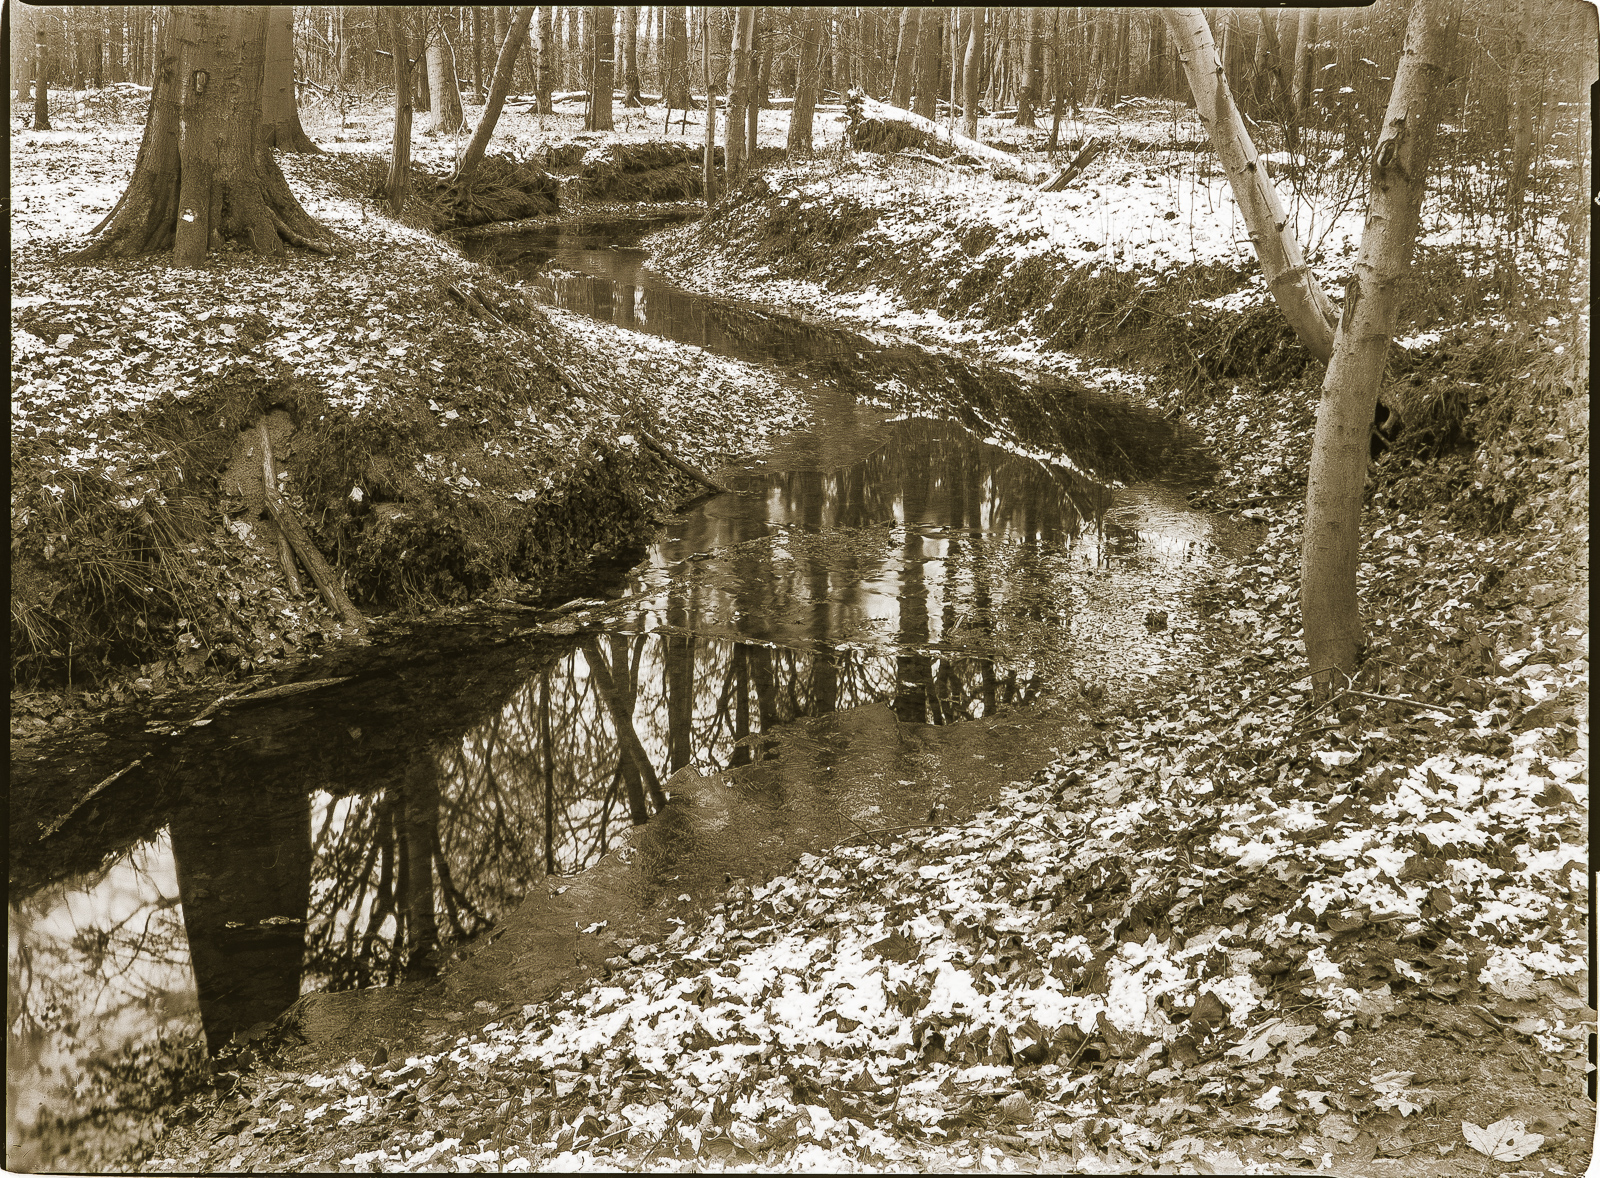 SchwarzWeißBild: Von links vorn zieht sich ein Bach durchs Bild, er beschreibt eine S-Kurve durch lichten, mit etwas Schnee bedeckten Waldboden.